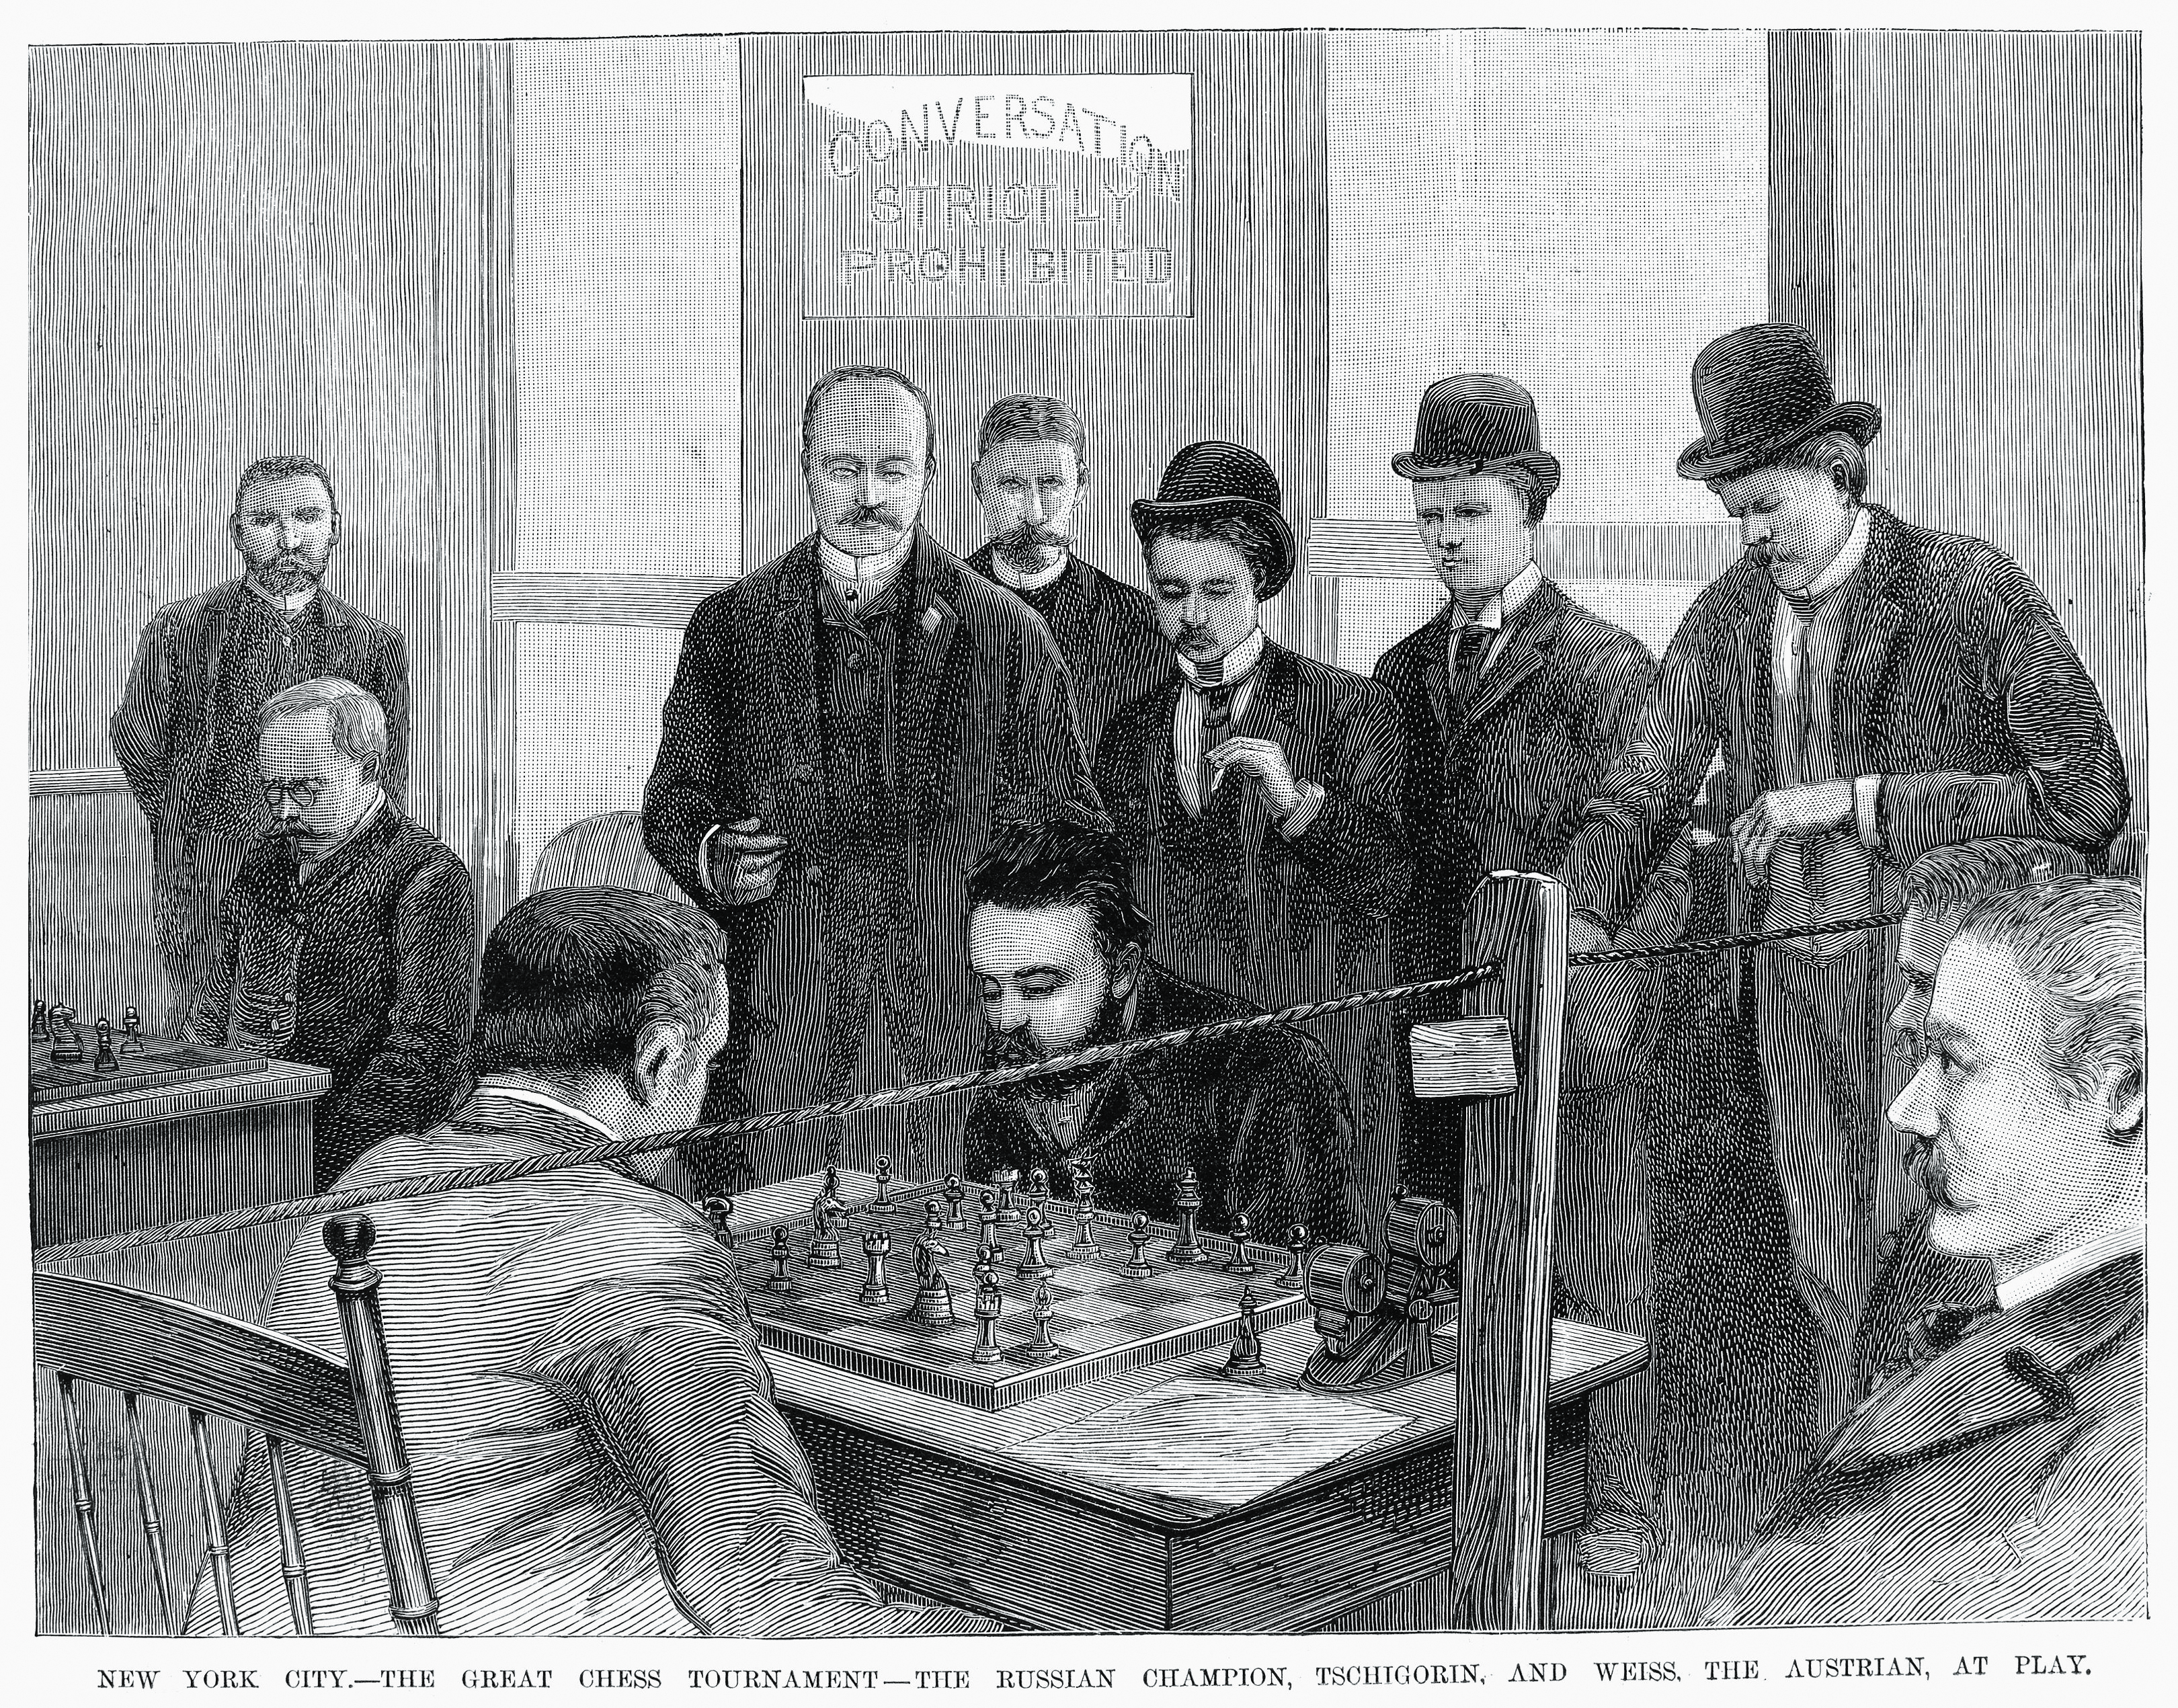 Wielki turniej szachowy pomiędzy Michaiłem Czigorinem (widać twarz) i Maxem Weissem w 1889 roku w Nowym Jorku. Drzeworyt na podstawie fotografii J.W. Baara